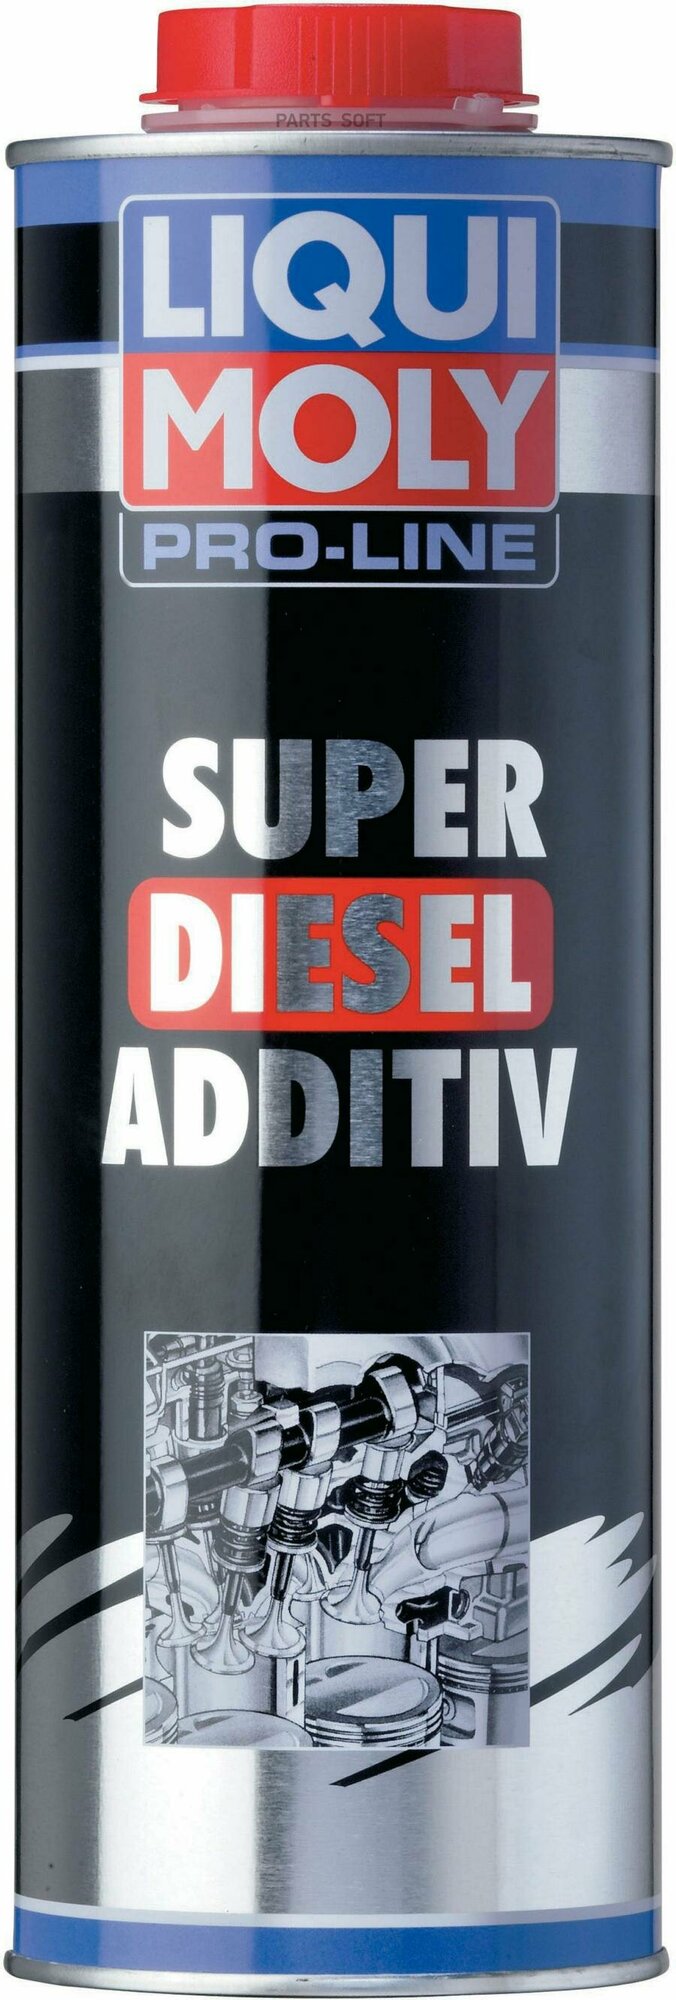 Модификатор дизельного топлива Pro-Line Super Diesel Additiv (1л) LIQUI MOLY / арт. 5176 - (1 шт)